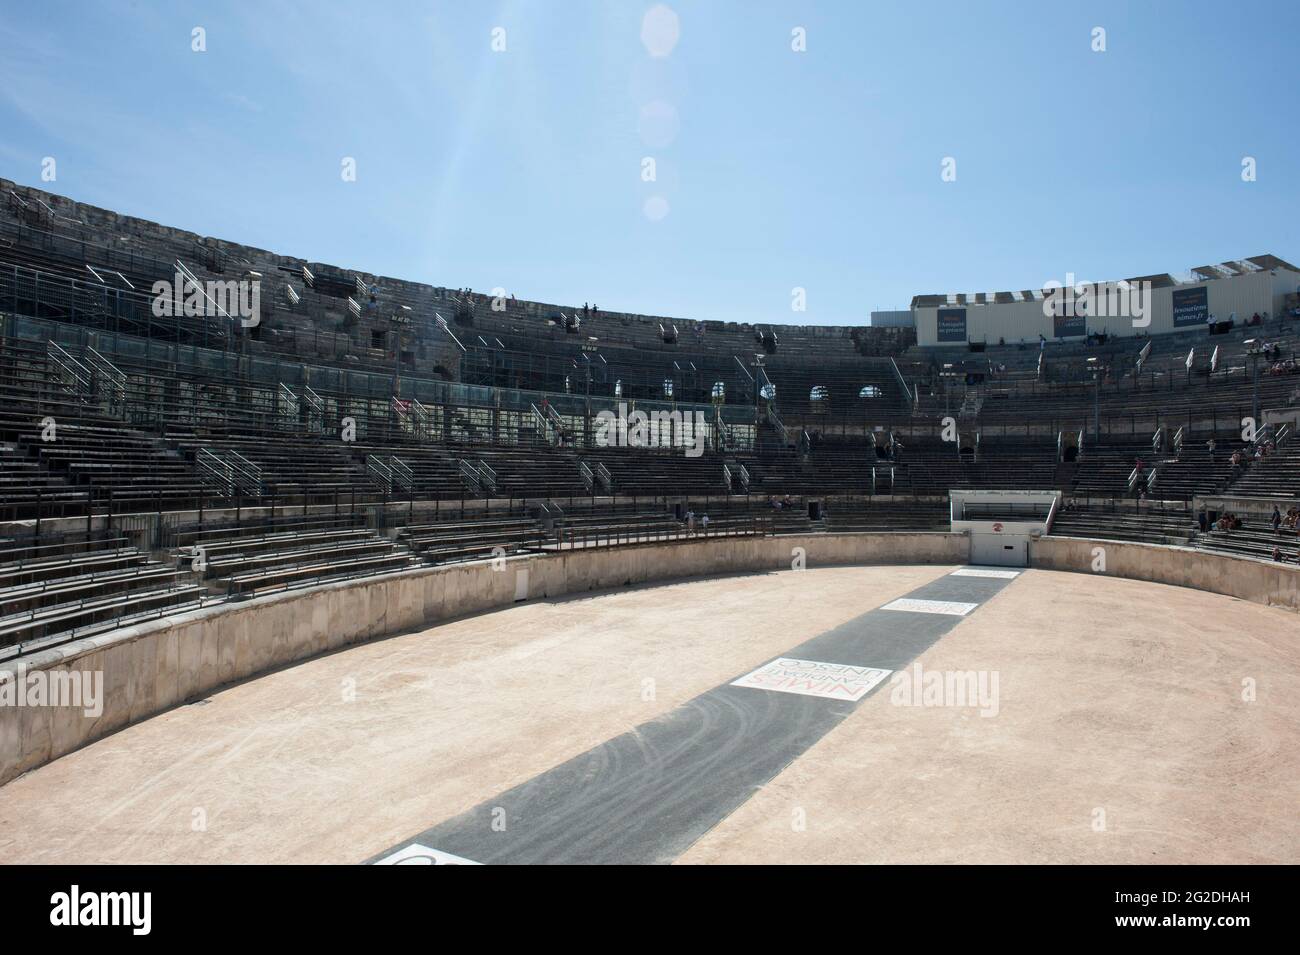 Touristen, die die Arena von Nîmes in Südfrankreich betrachten Stockfoto